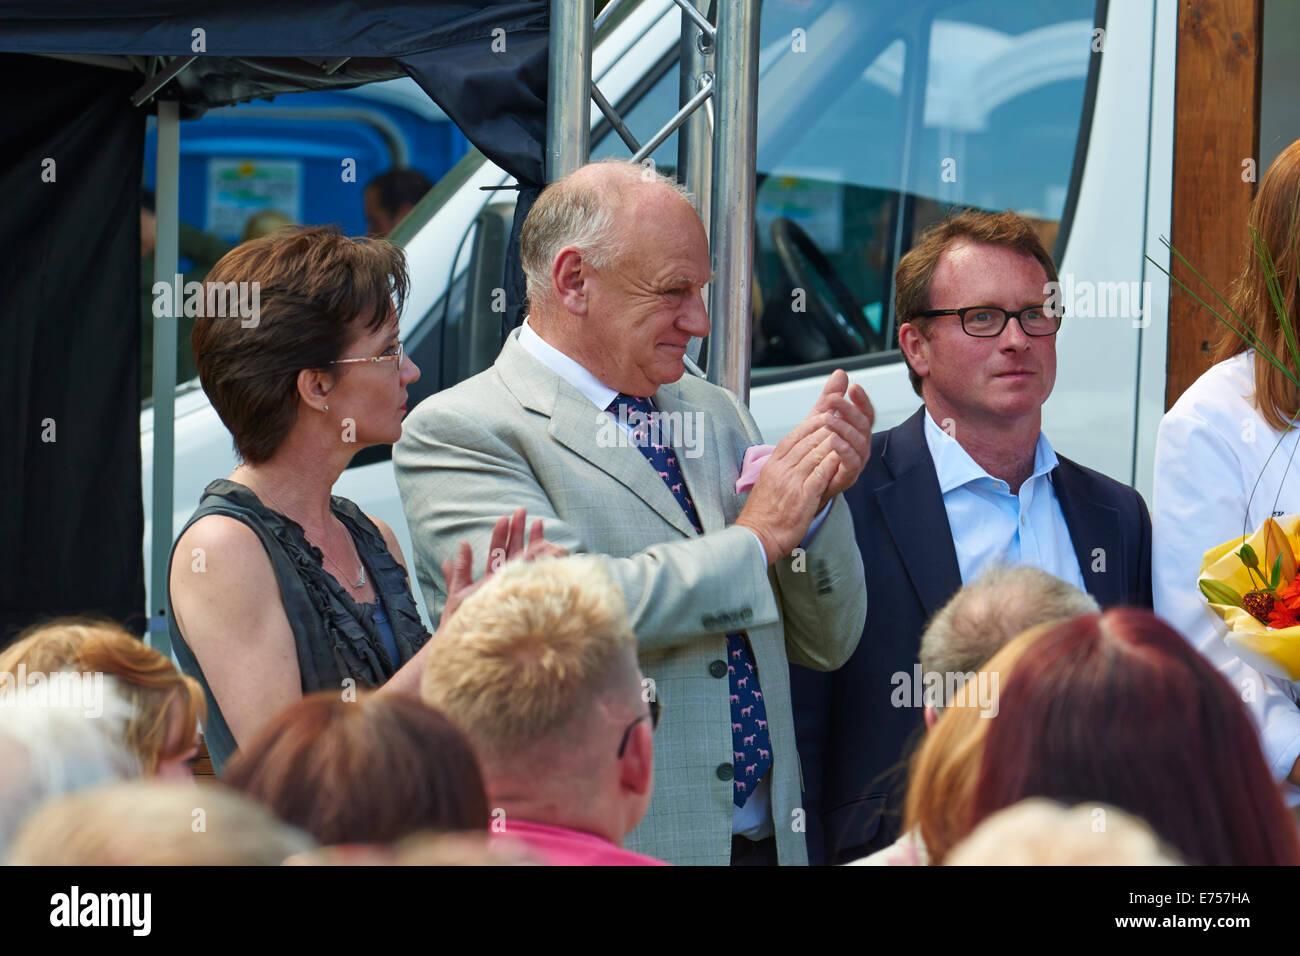 Peter Allen, président de Aubrey Allen (centre), MP Chris White (droite) lors de la fête de la nourriture et des boissons Leamington Spa Warwickshire Banque D'Images